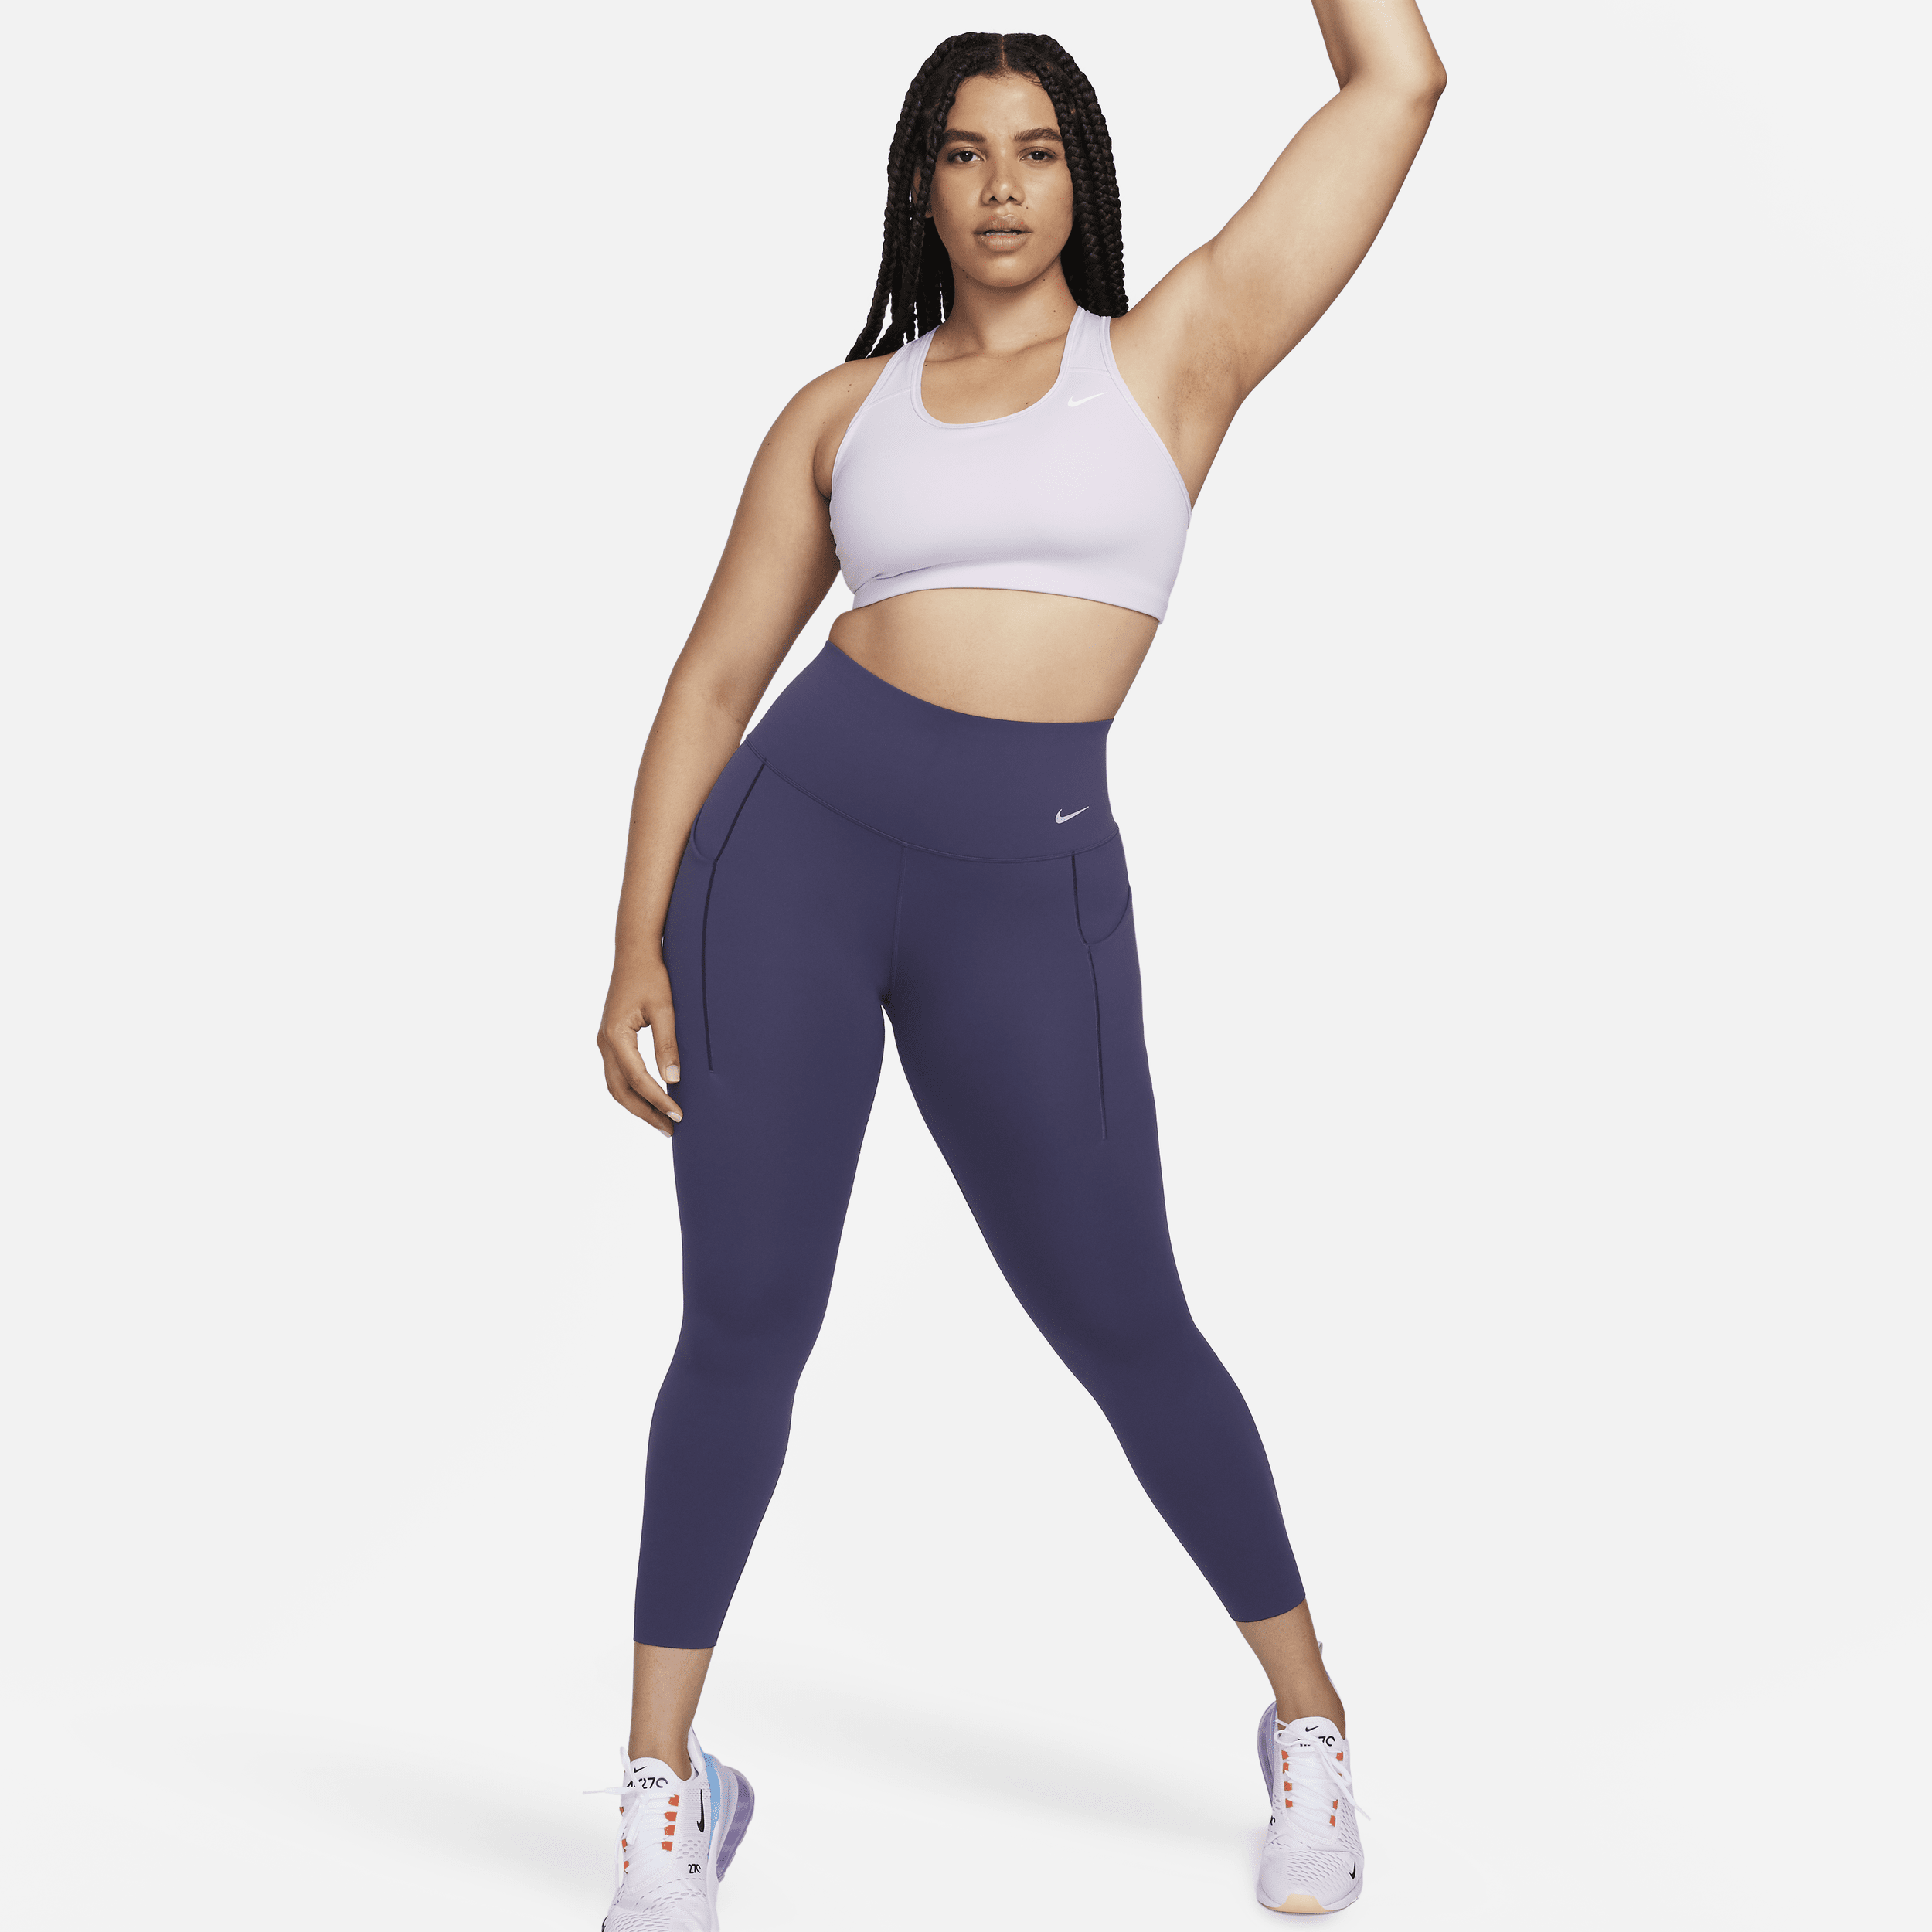 Nike Universa-leggings i 7/8 længde med medium støtte, høj talje og lommer til kvinder - lilla